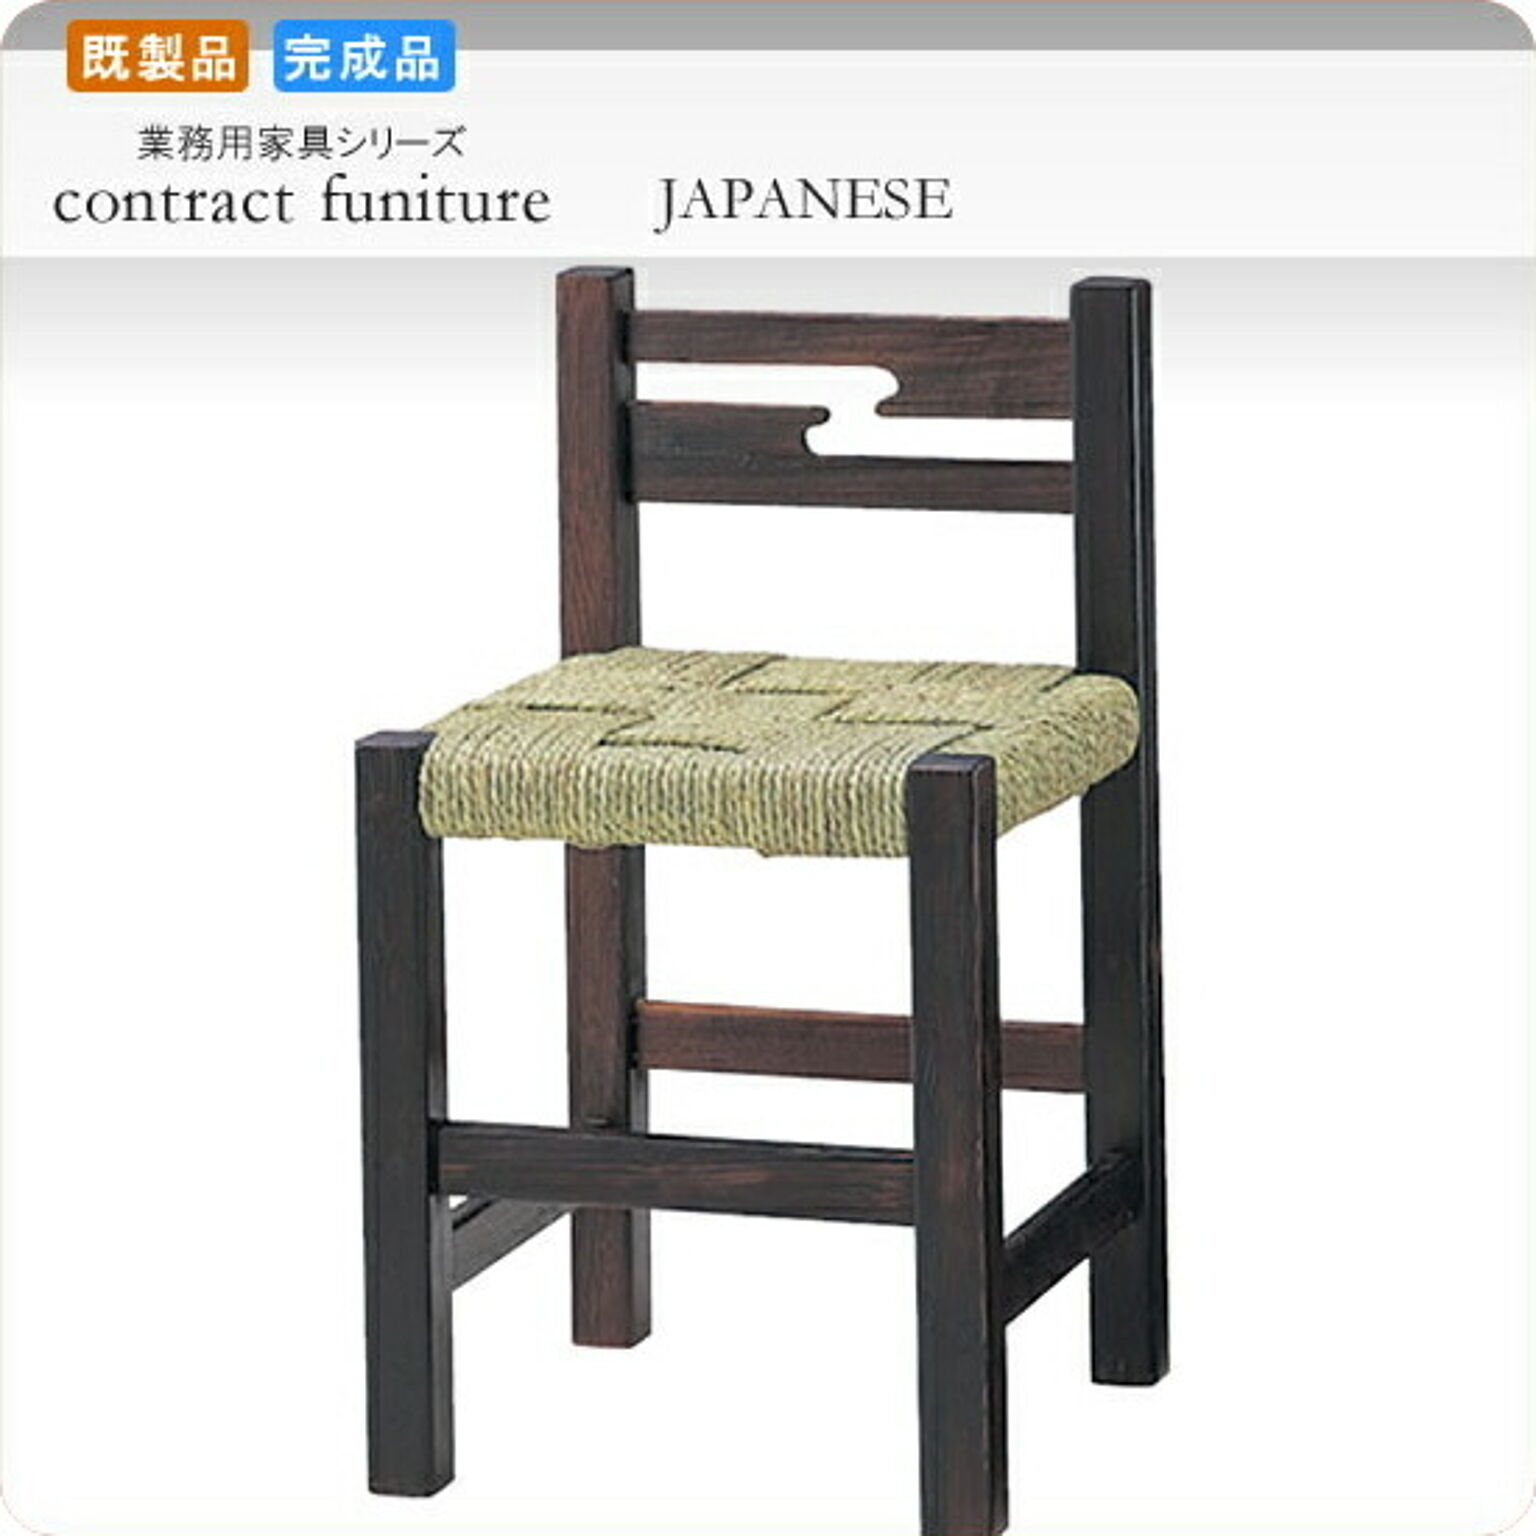 ダイニングチェアー 椅子 イス 鶴瀬 業務用家具シリーズ JAPANESE（ジャパニーズ）  店舗 施設 コントラクト